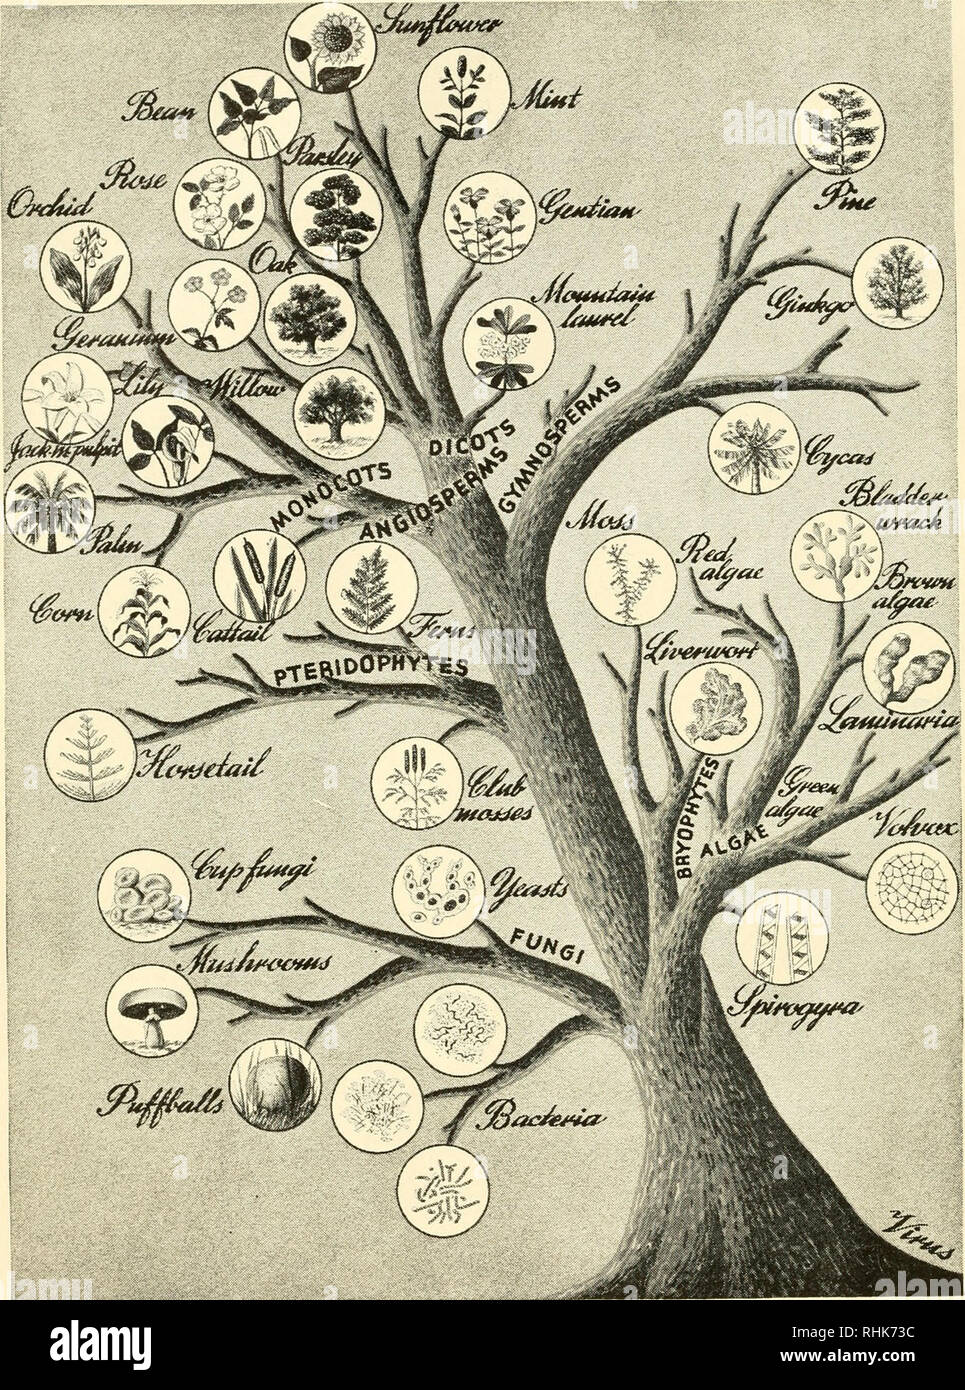 La biología y el hombre. Biología; los seres humanos. El árbol genealógico  de la vida vegetal cuando tratamos de ordenar las cosas vivientes (o  cualquier otro tipo de cosas, para este